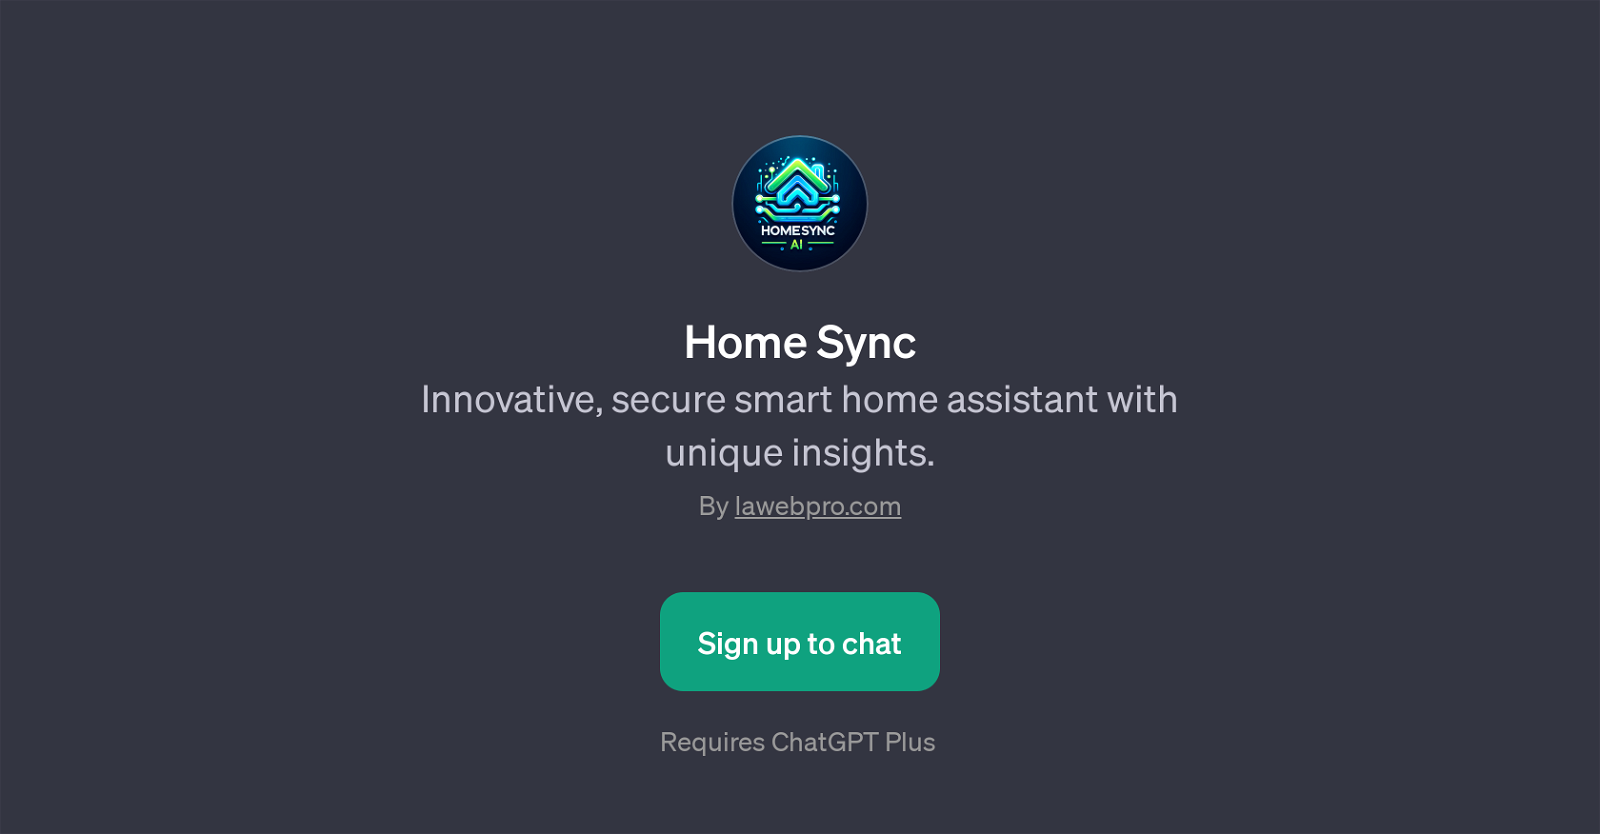 Home Sync website